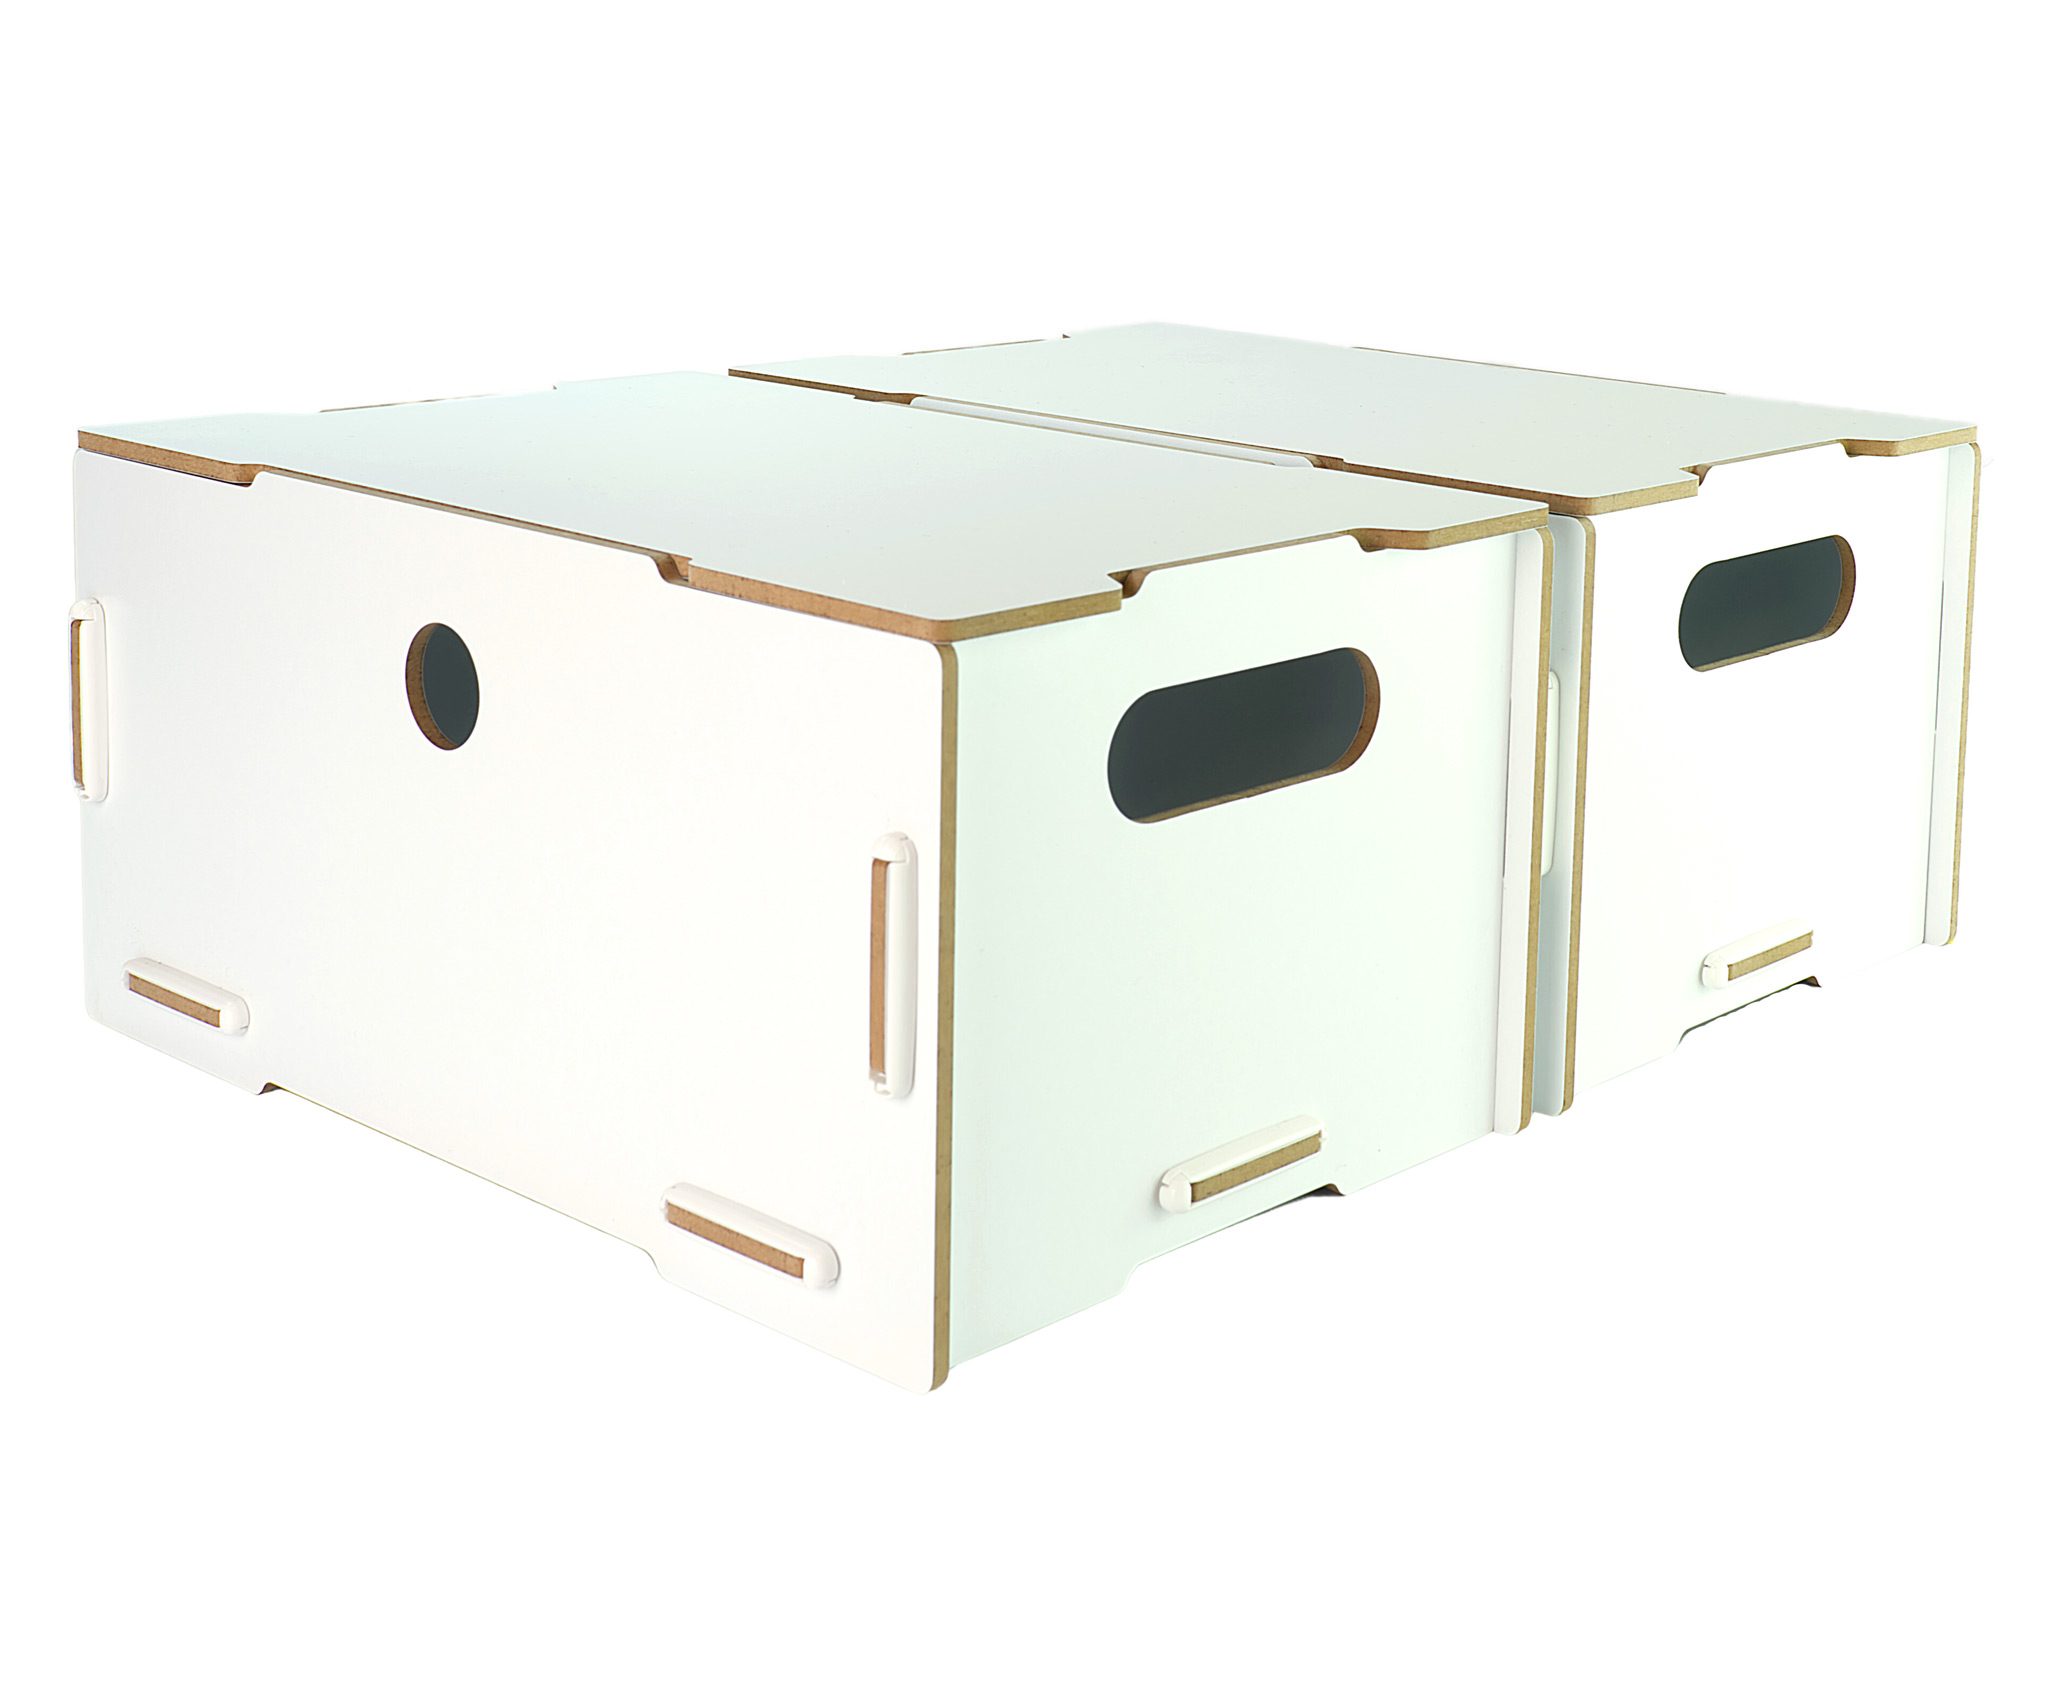 Clipfritz innovative Möbel Aufbewahrungsboxen nachhaltig